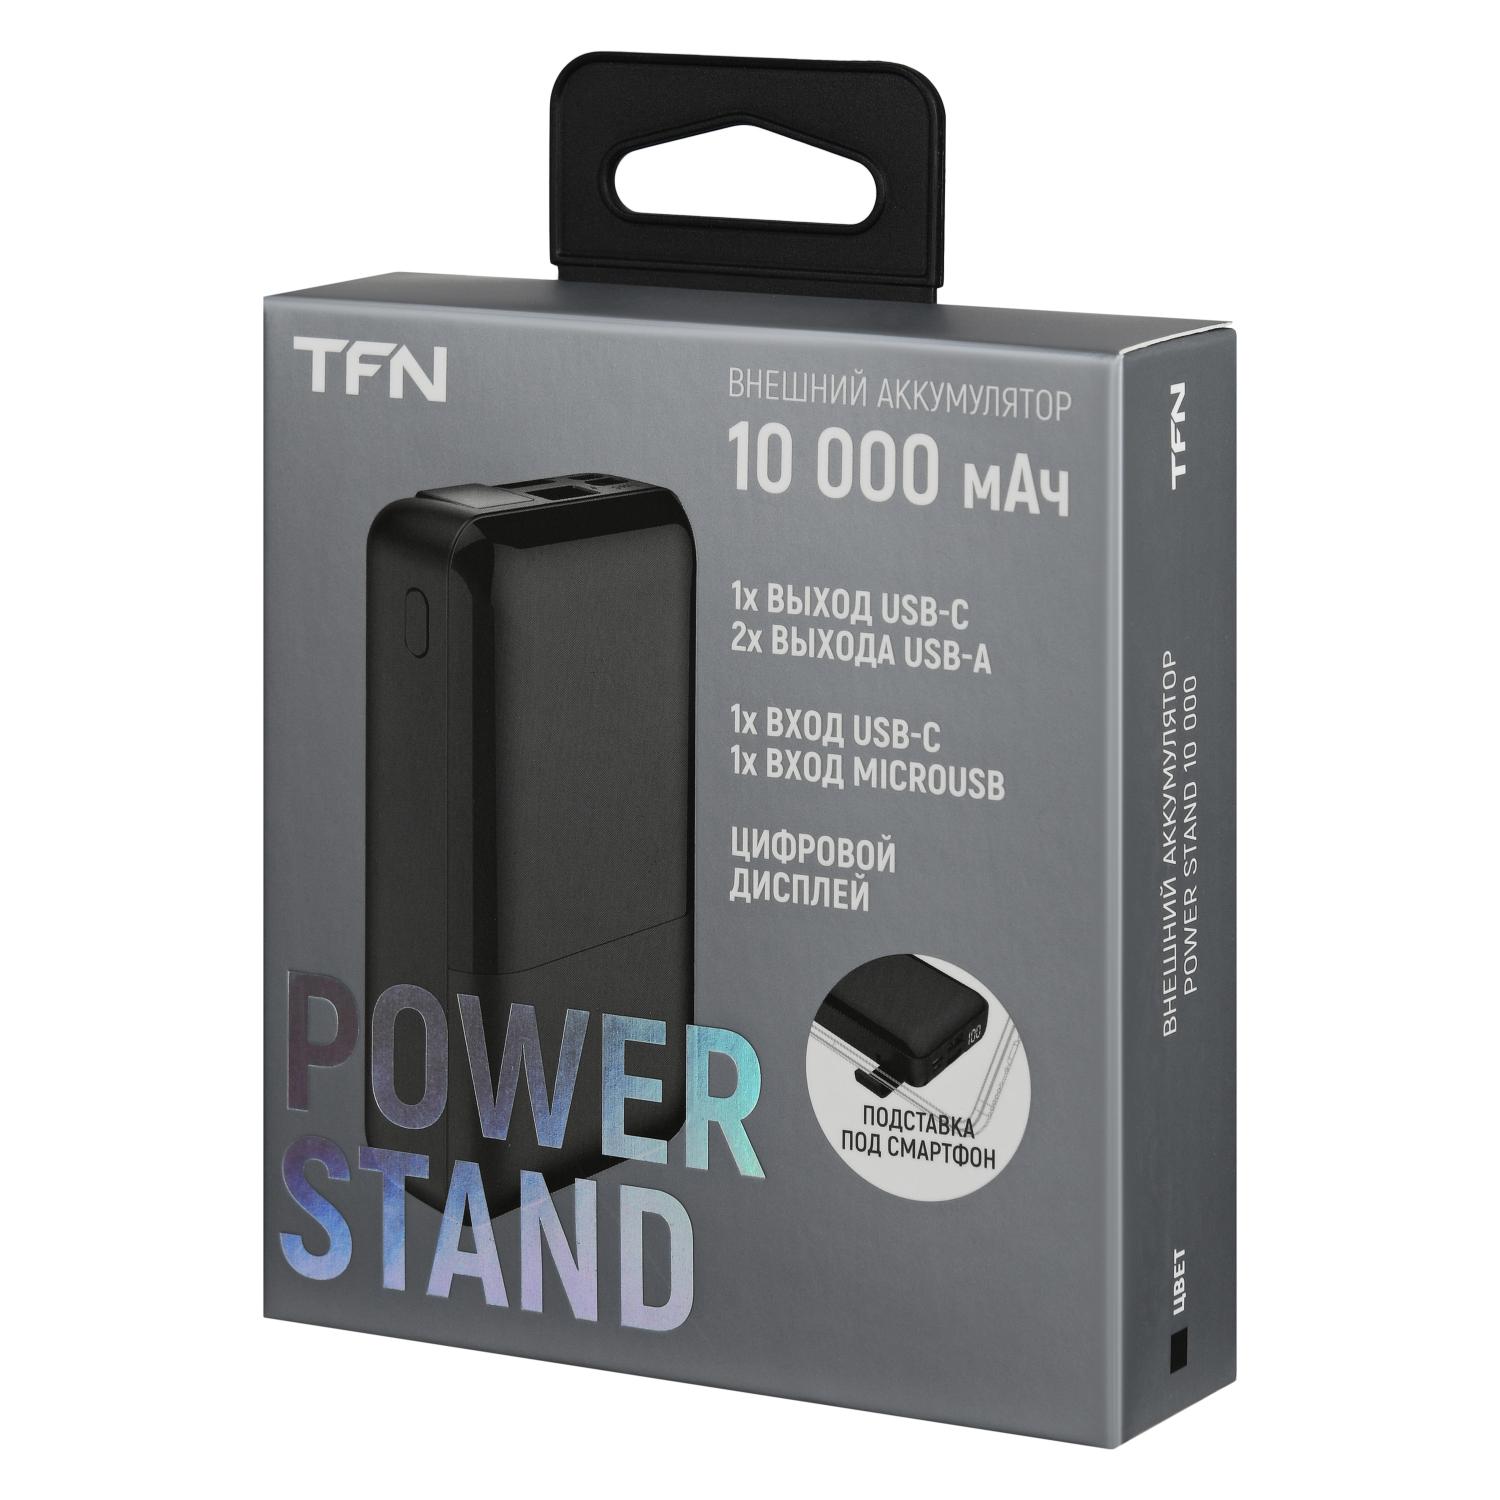 Внешний аккумулятор TFN 10000mAh Power Stand 10 черный, TFN TFN-PB-255-BK